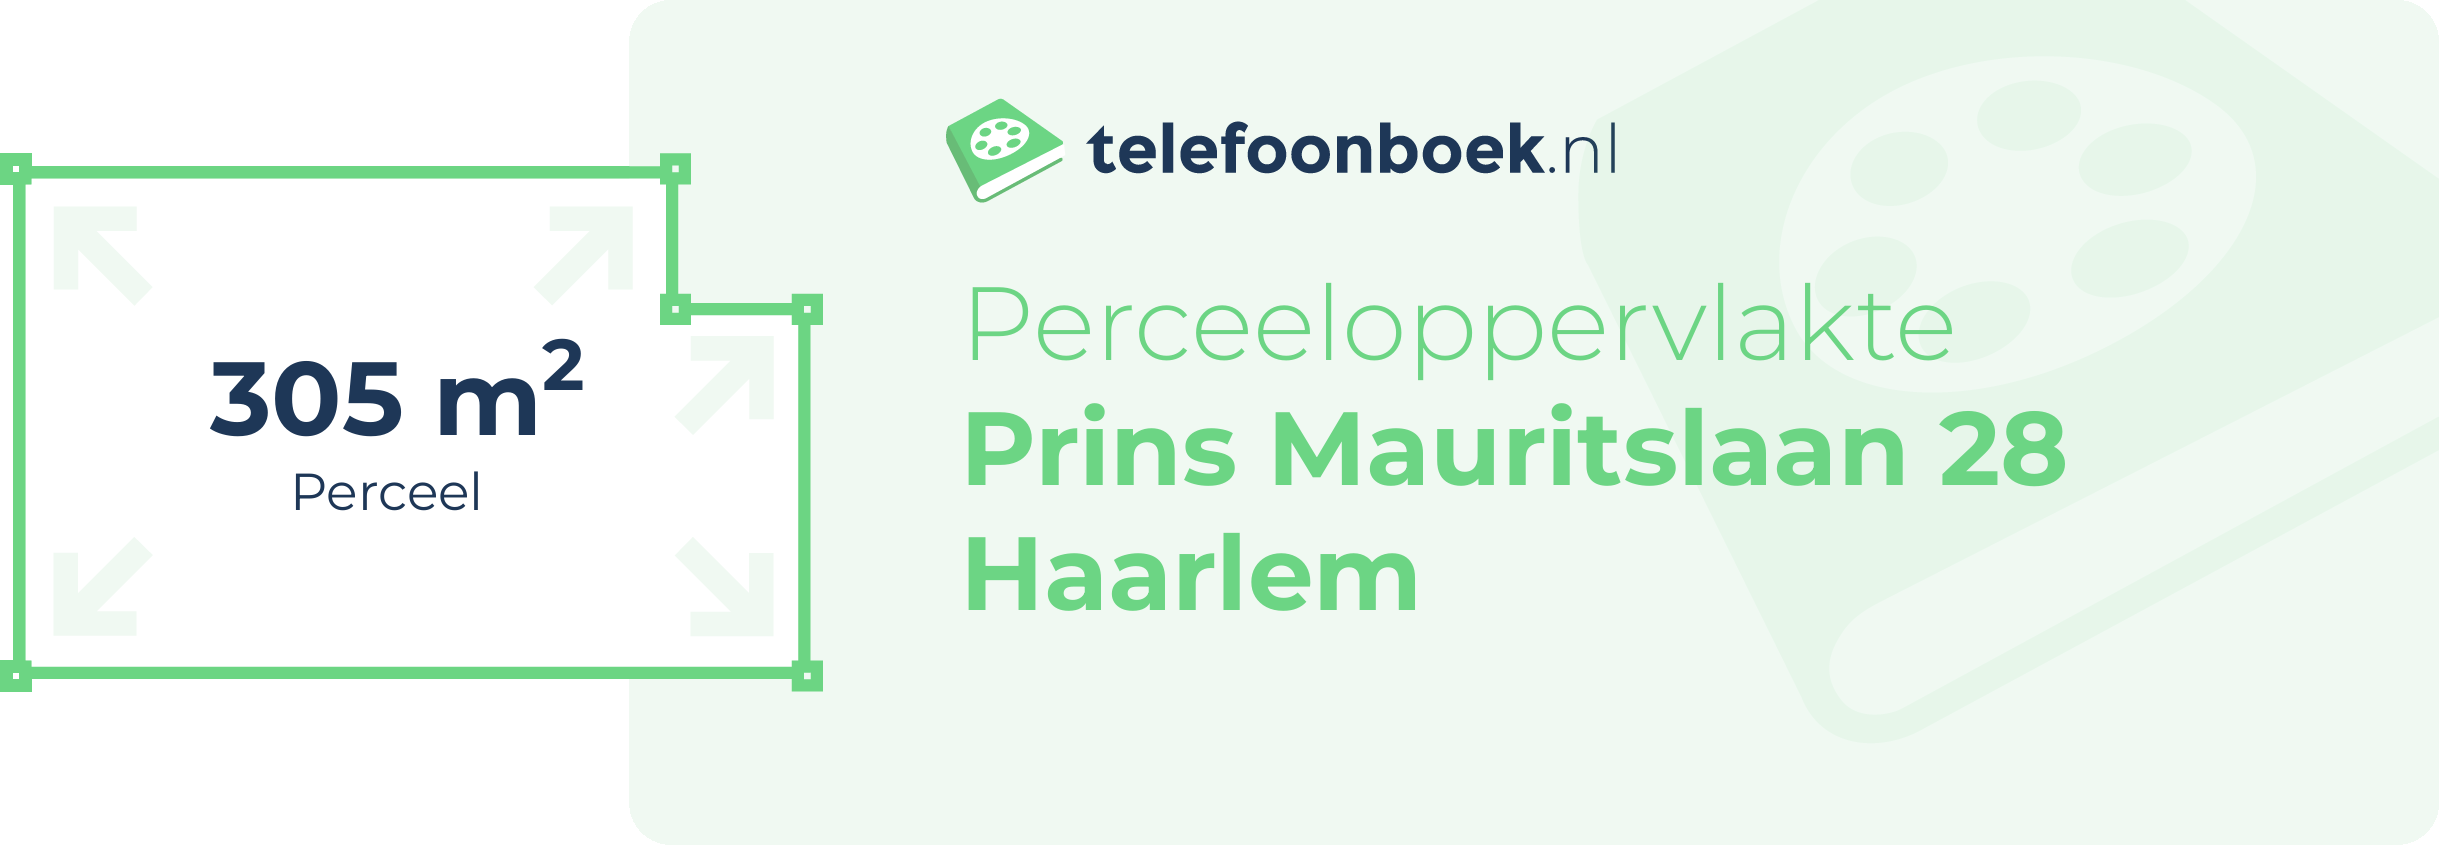 Perceeloppervlakte Prins Mauritslaan 28 Haarlem